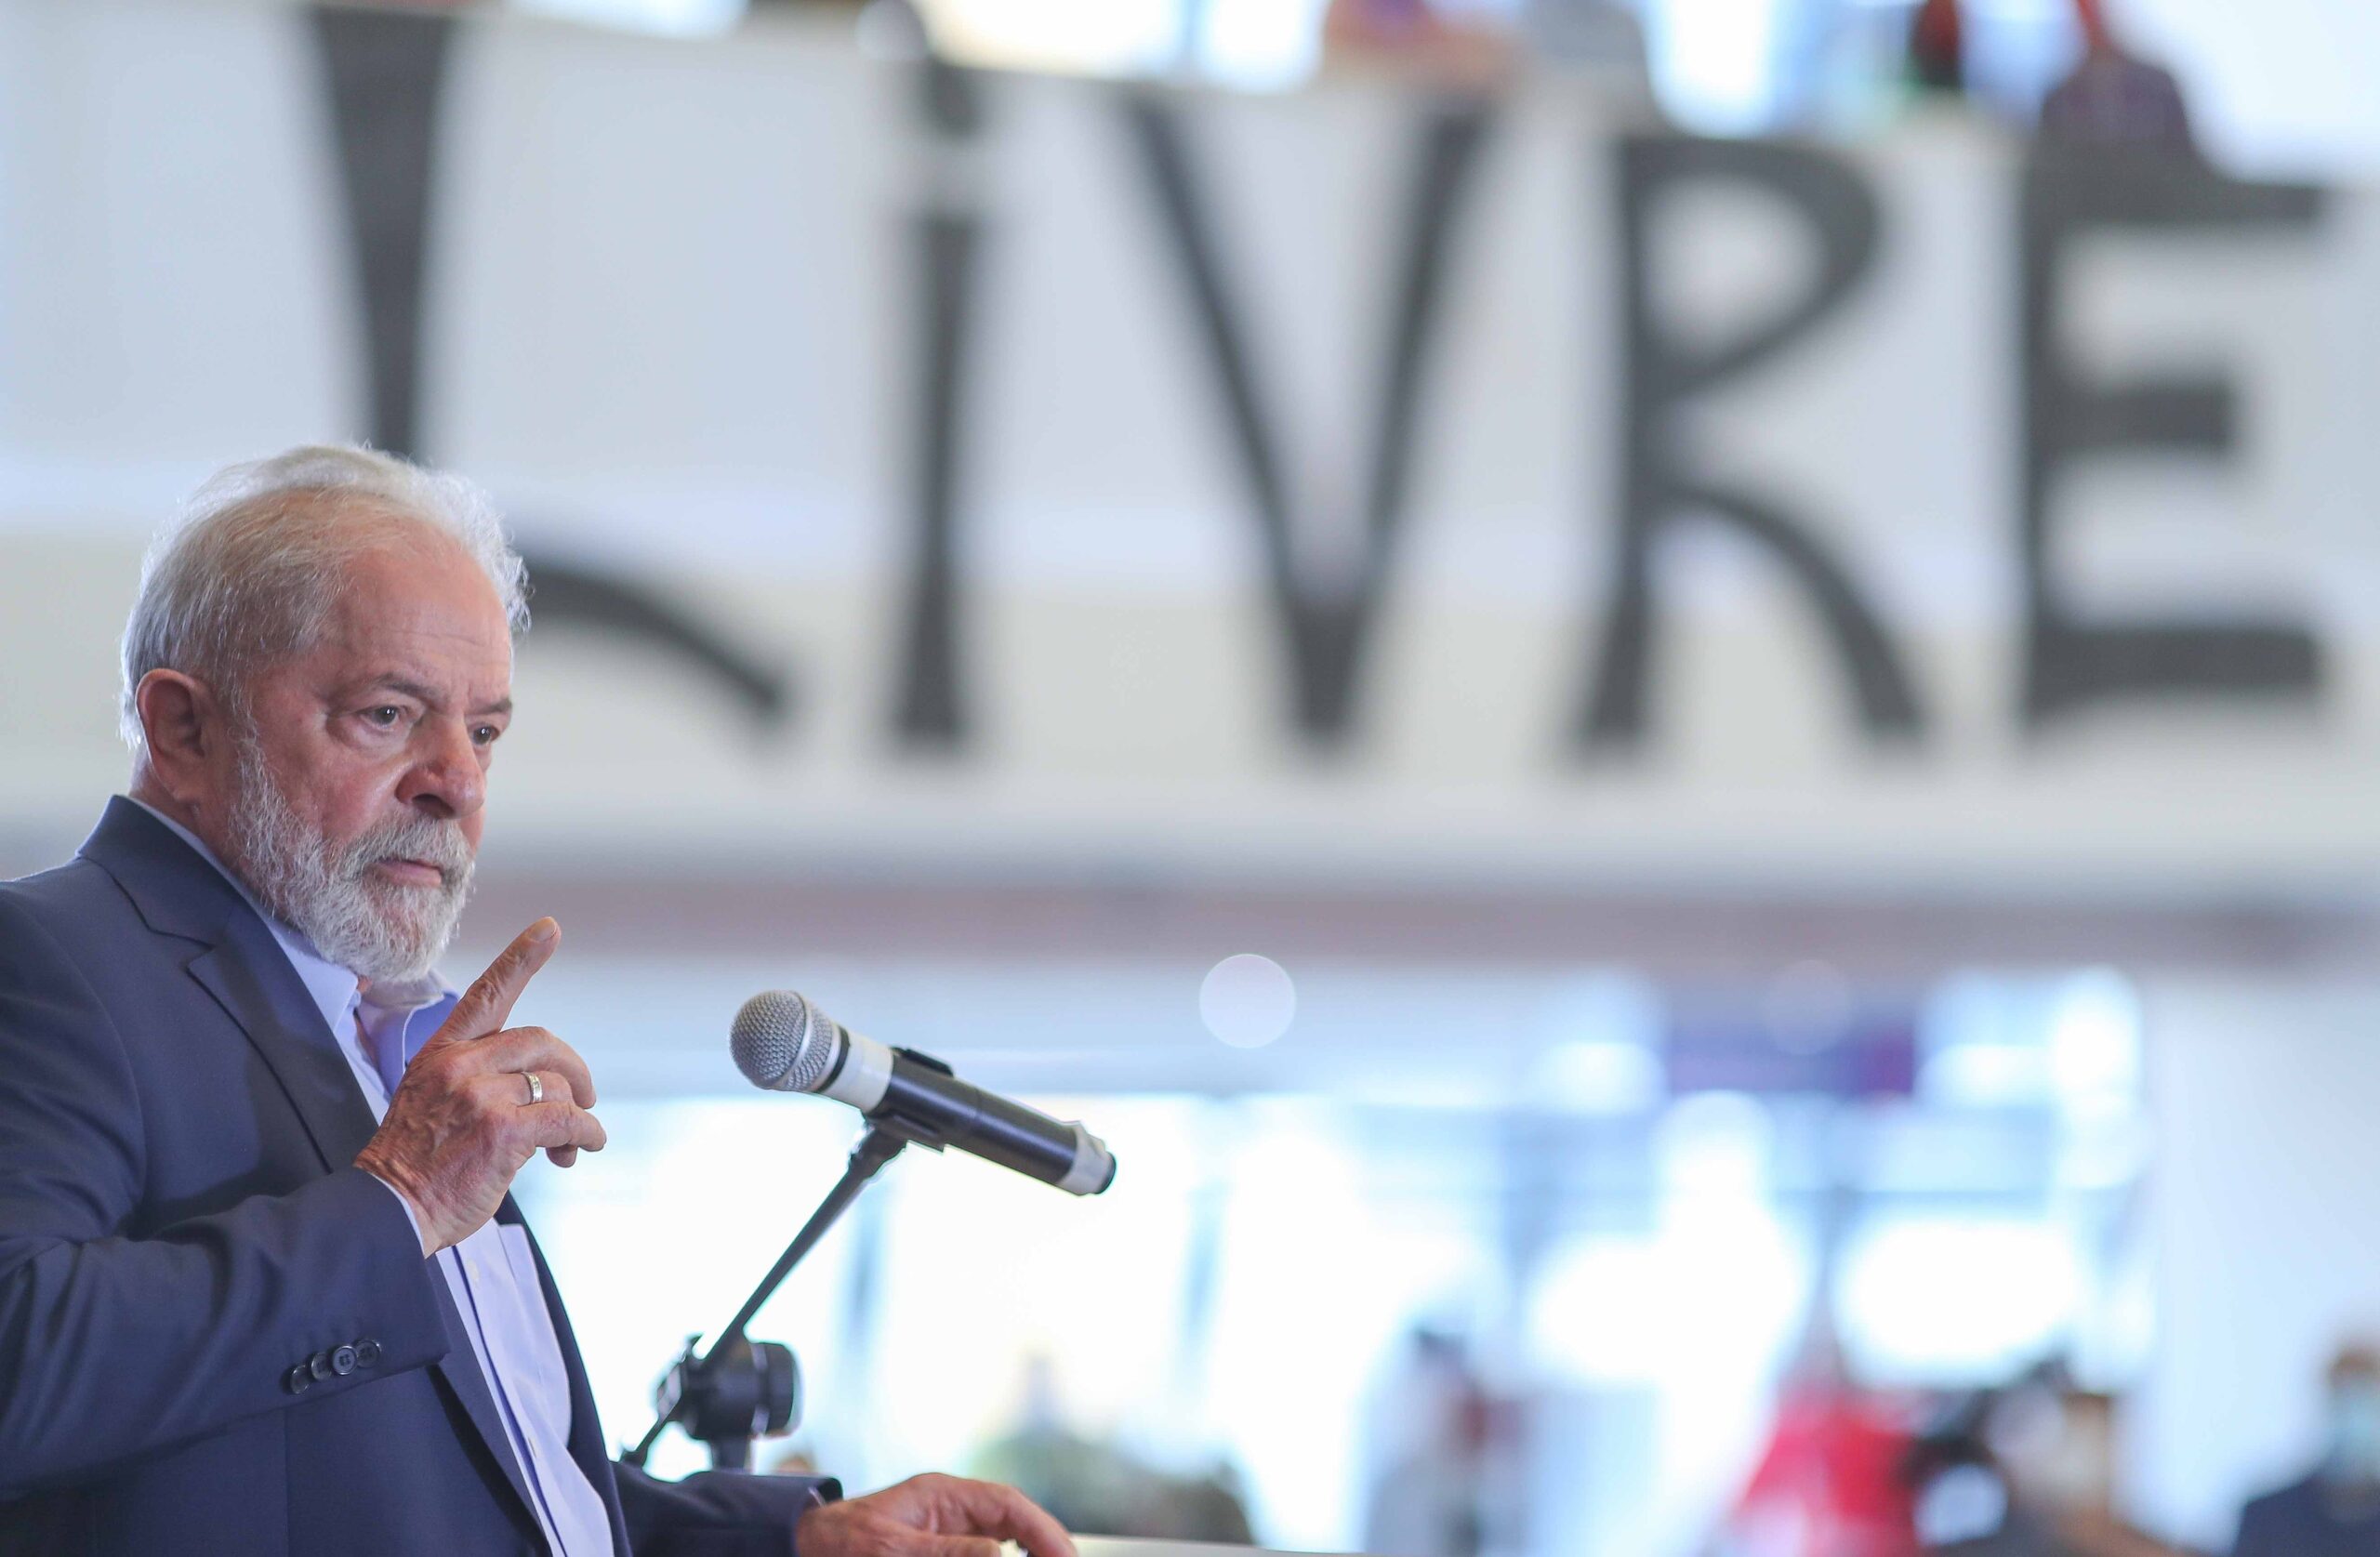 Em discurso histórico, Lula reafirma inocência, deixa 2022 em aberto e manda recado: “não tenham medo de mim”